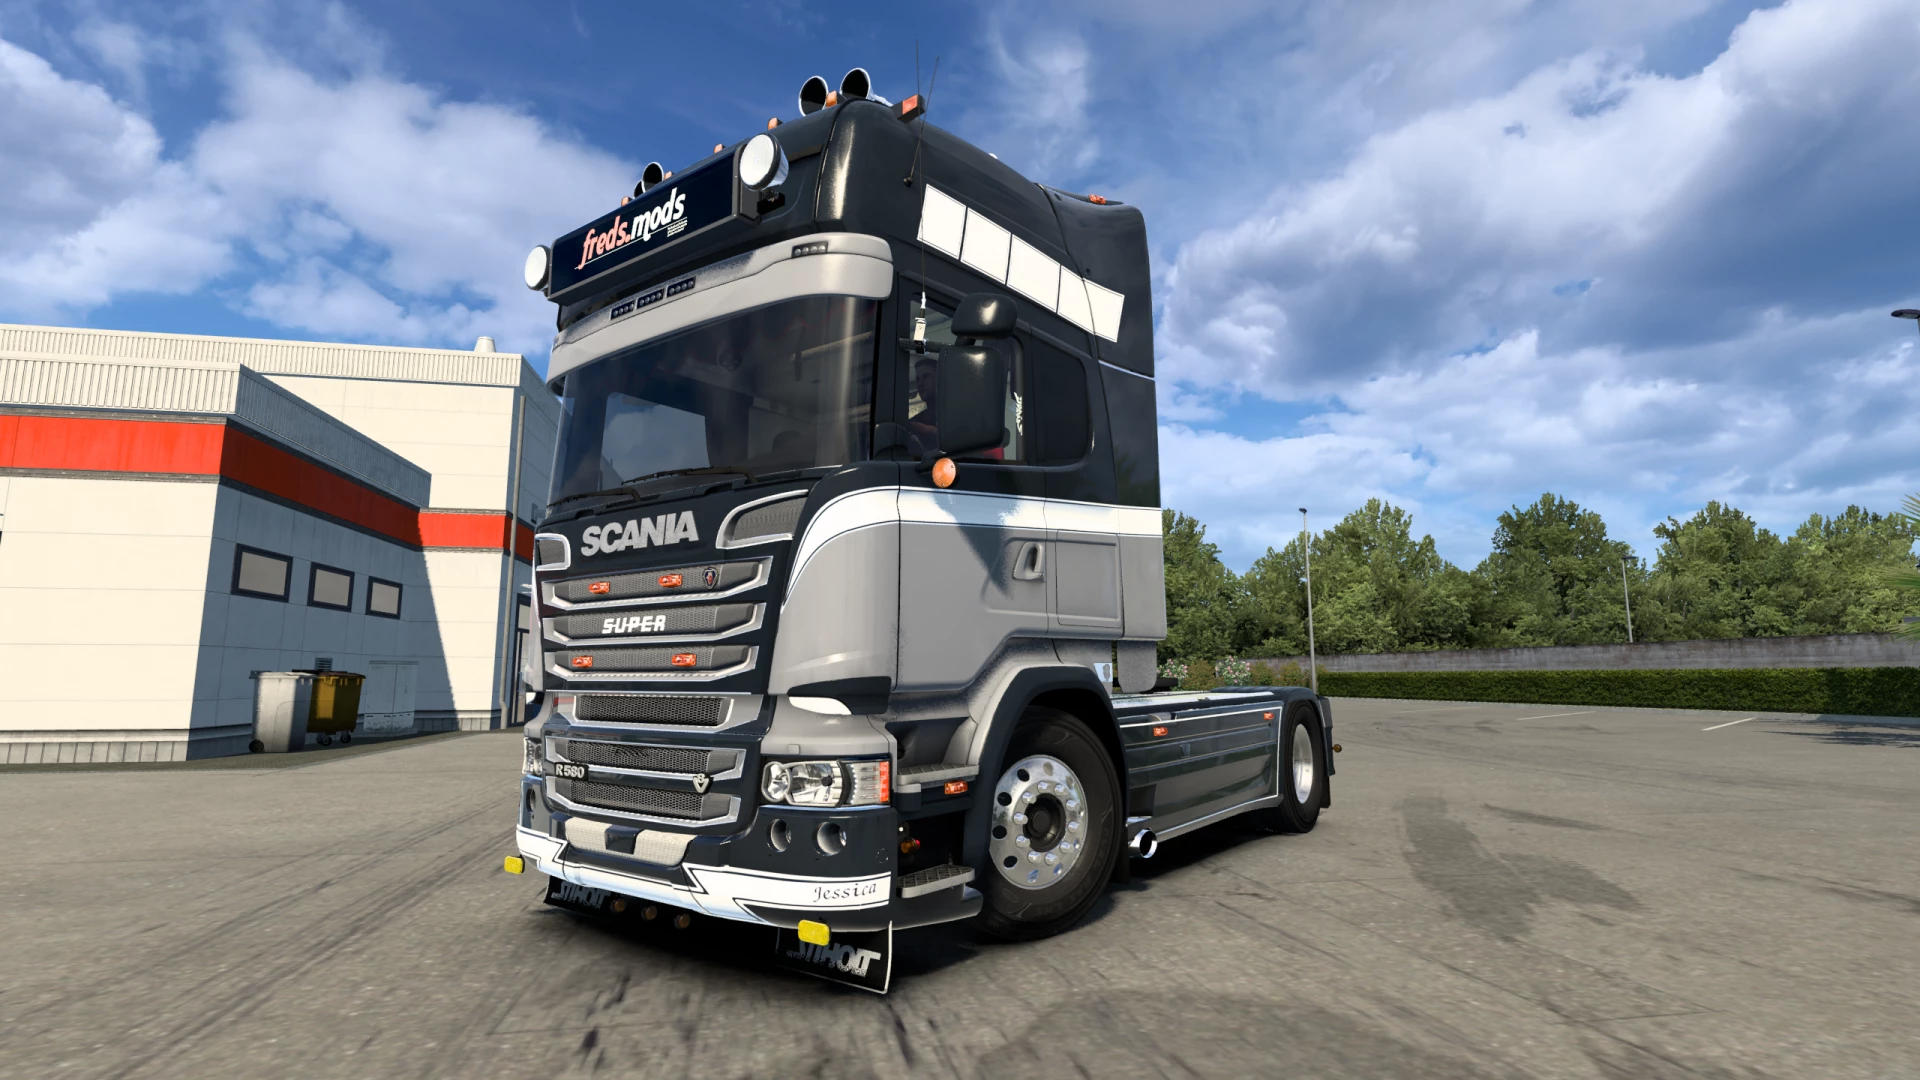 Scania Modified R Streamline Ets2 Euro Truck Simulato 8159